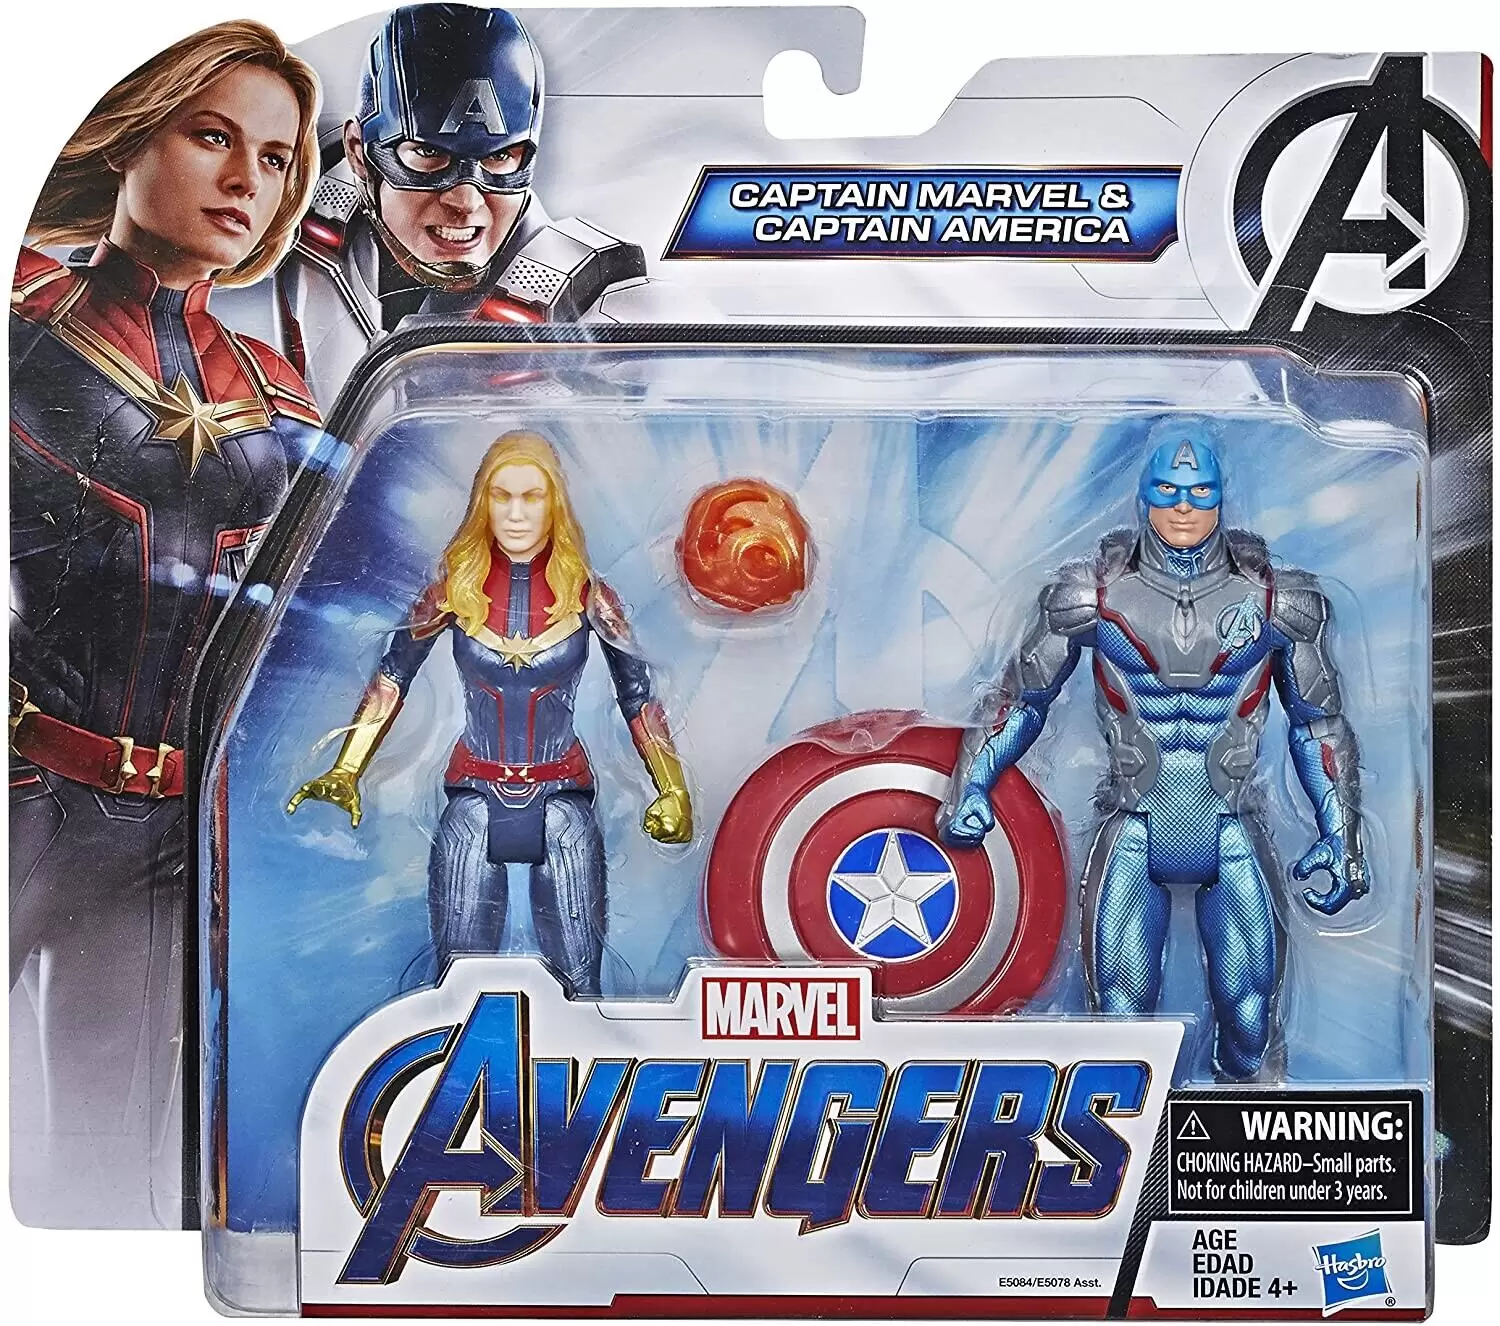 Avengers: Endgame - Captain Marvel & Captain America